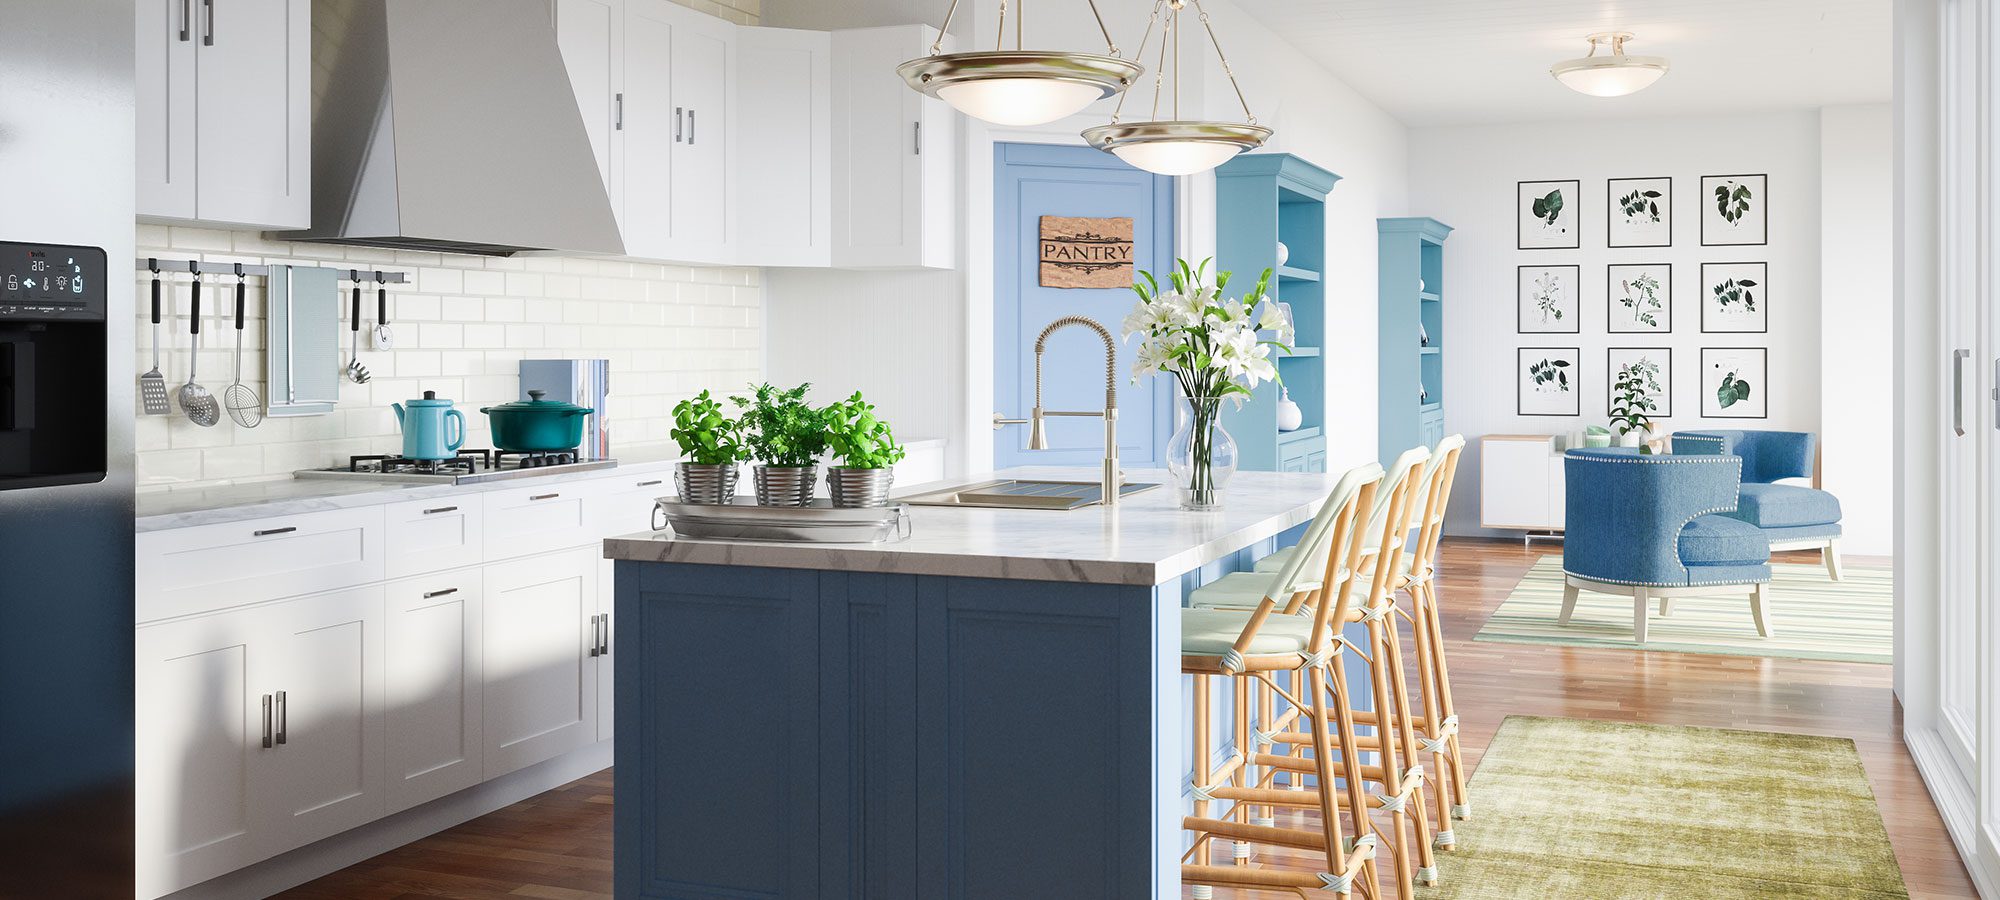 Design House Kitchen White & Blue